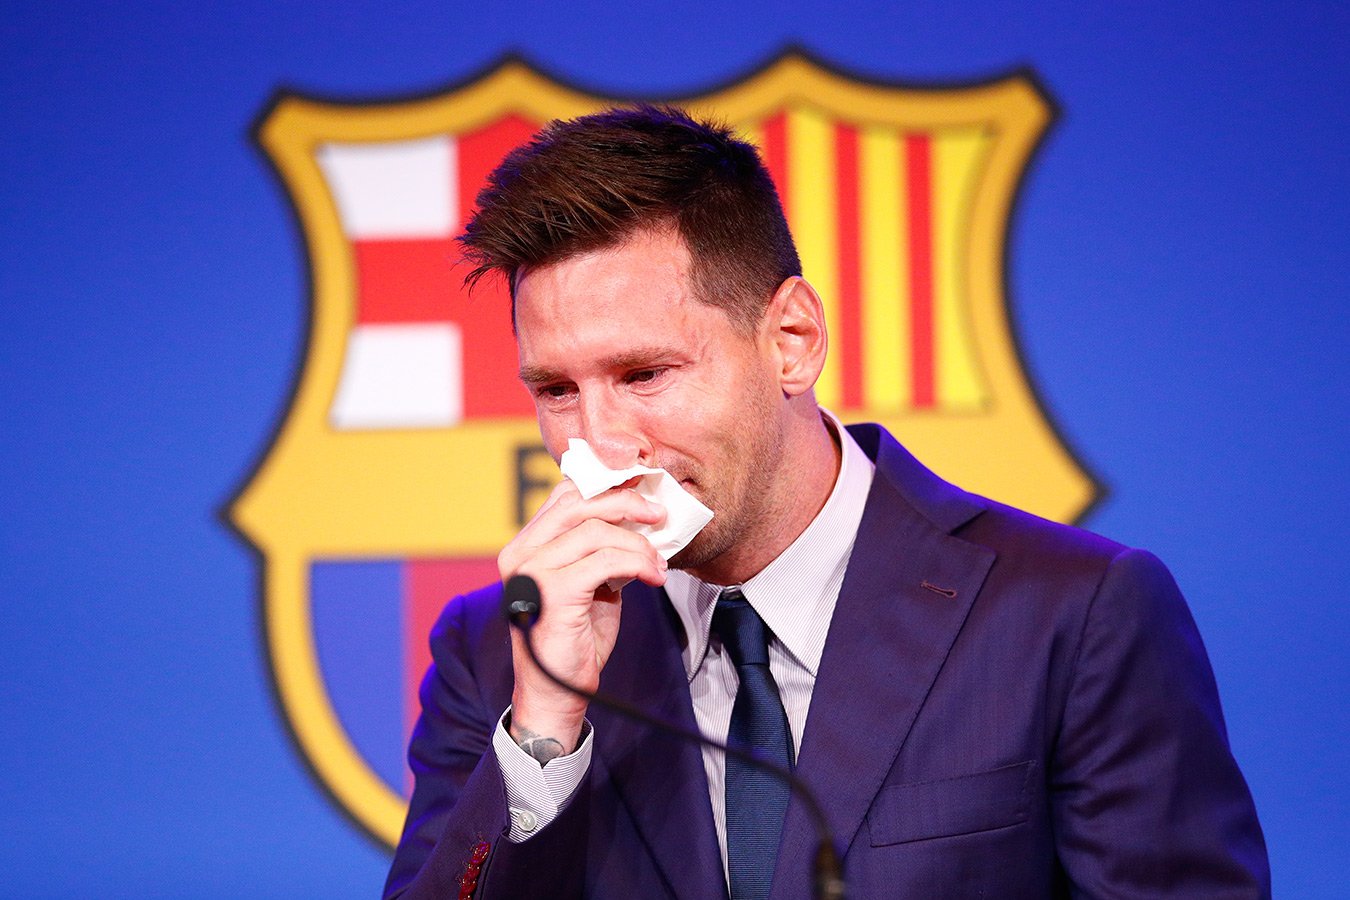 Les données personnelles de Lionel Messi ont été divulguées en ligne lors d'une importante violation des données